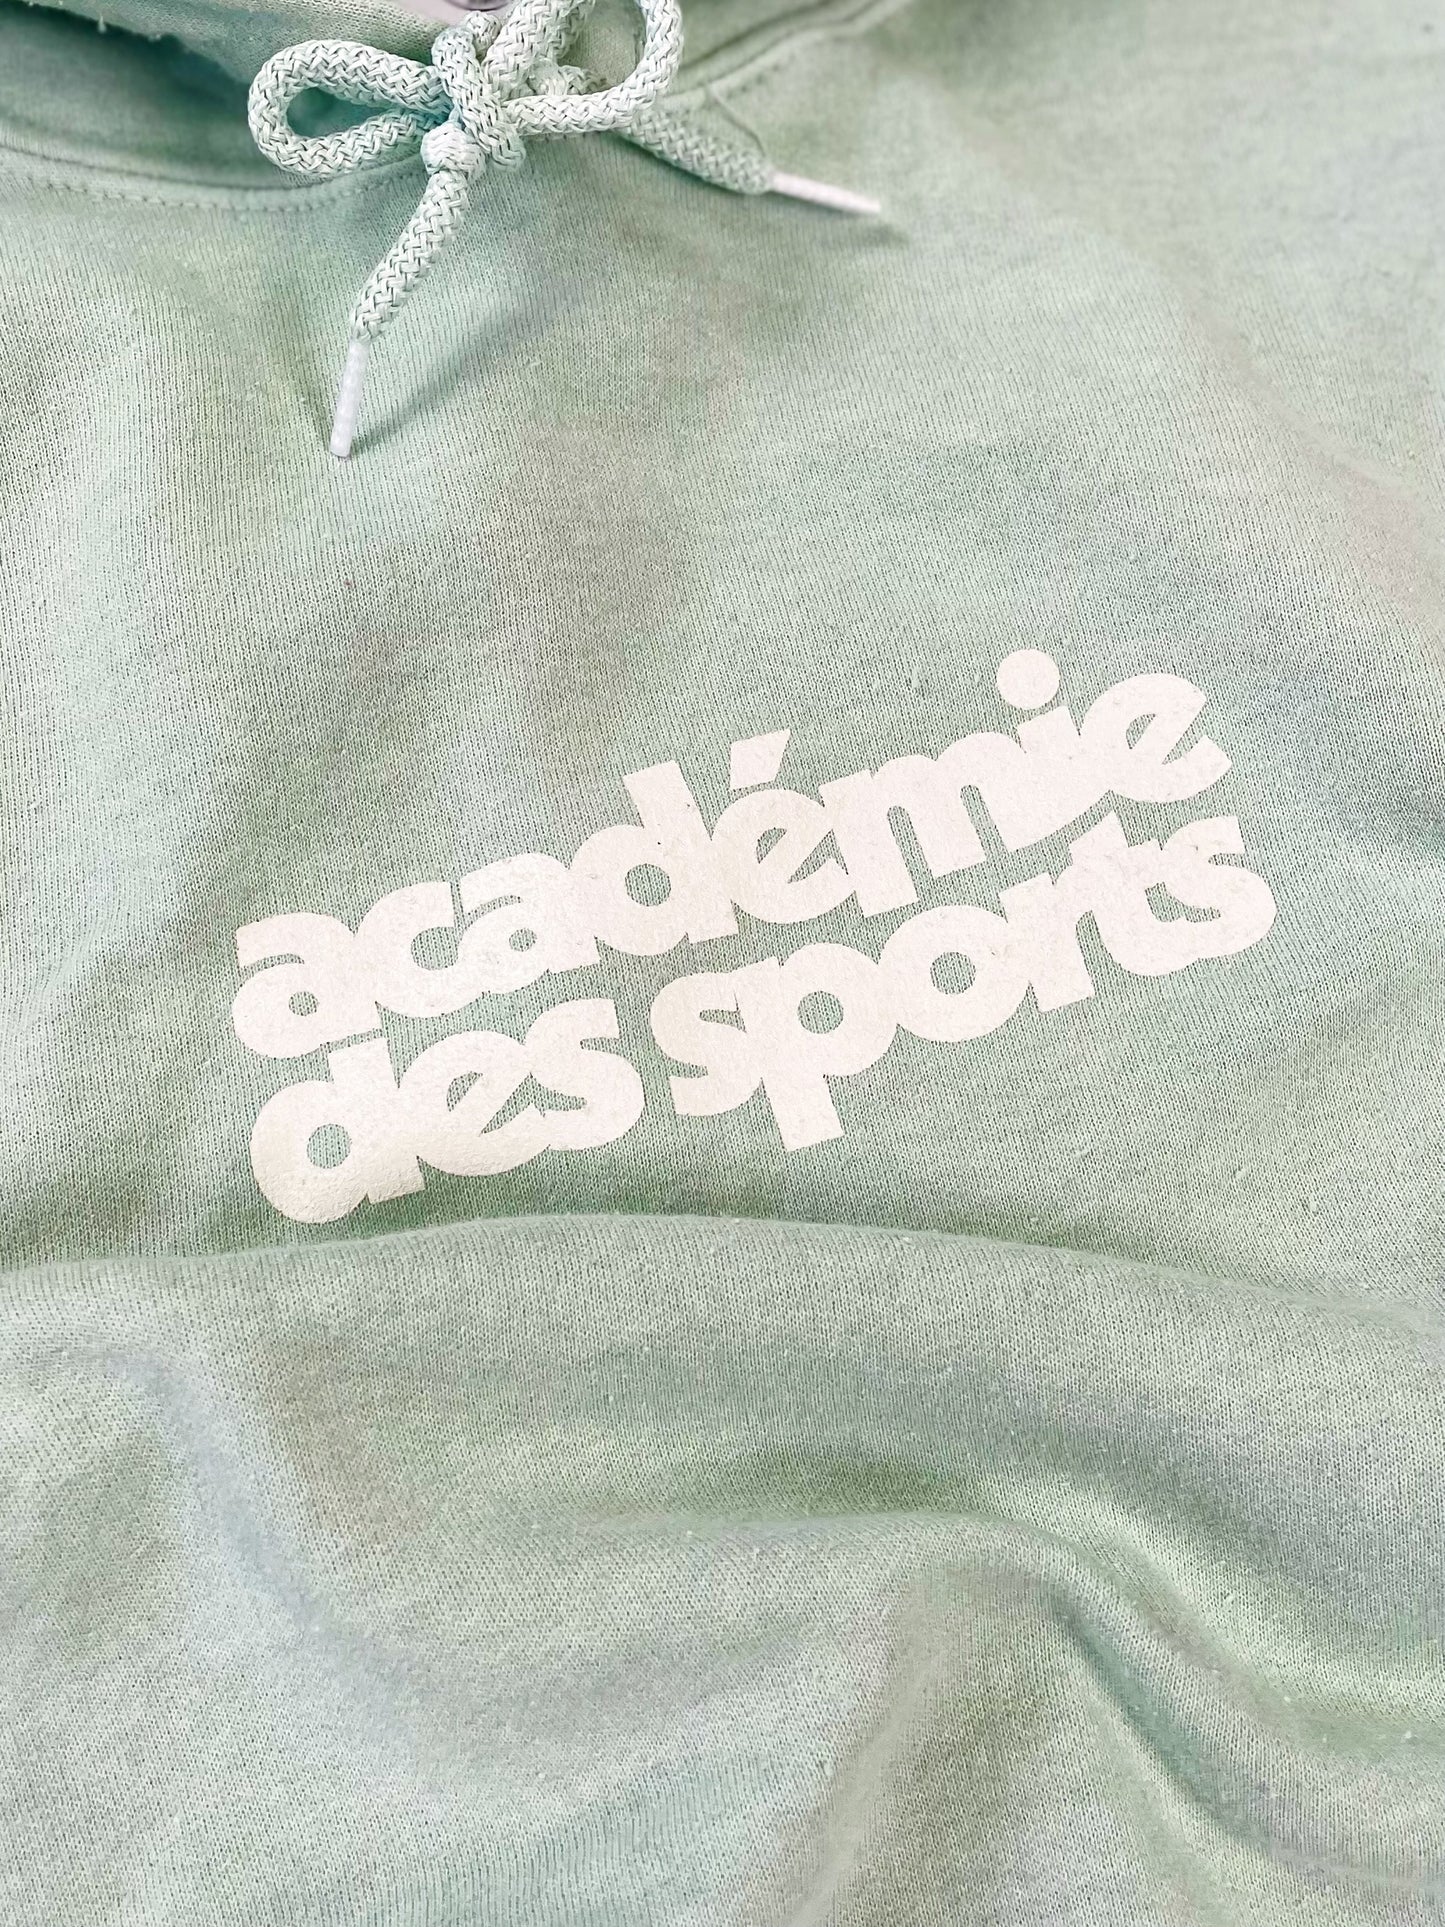 Vice 84 'Académie des Sports' Vintage Washed Hoodie - Mint